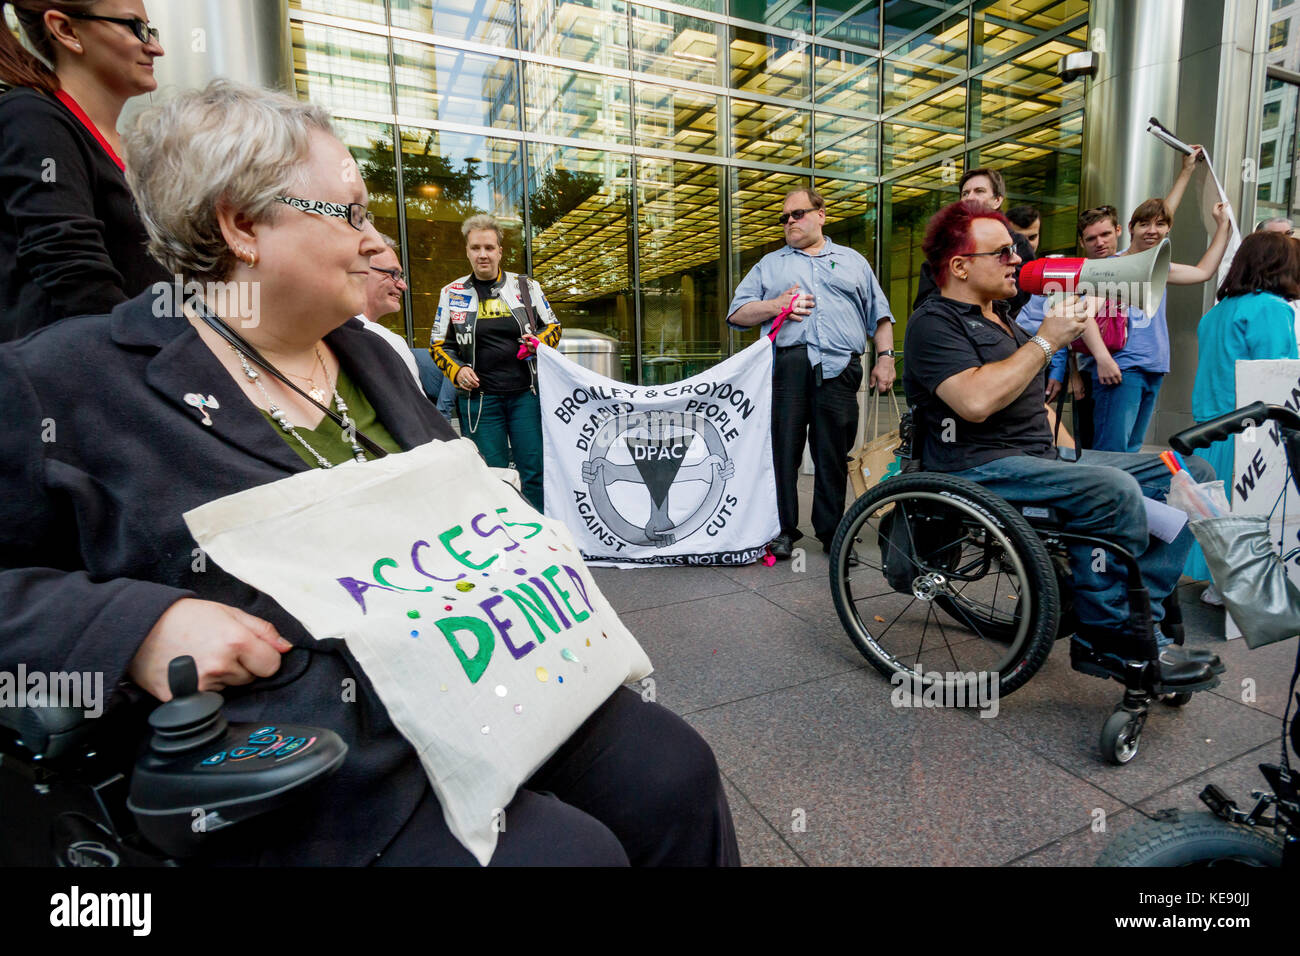 Les militants d'invalidité manifestation devant le siège social traverse à Canary Wharf, London, UK. Banque D'Images